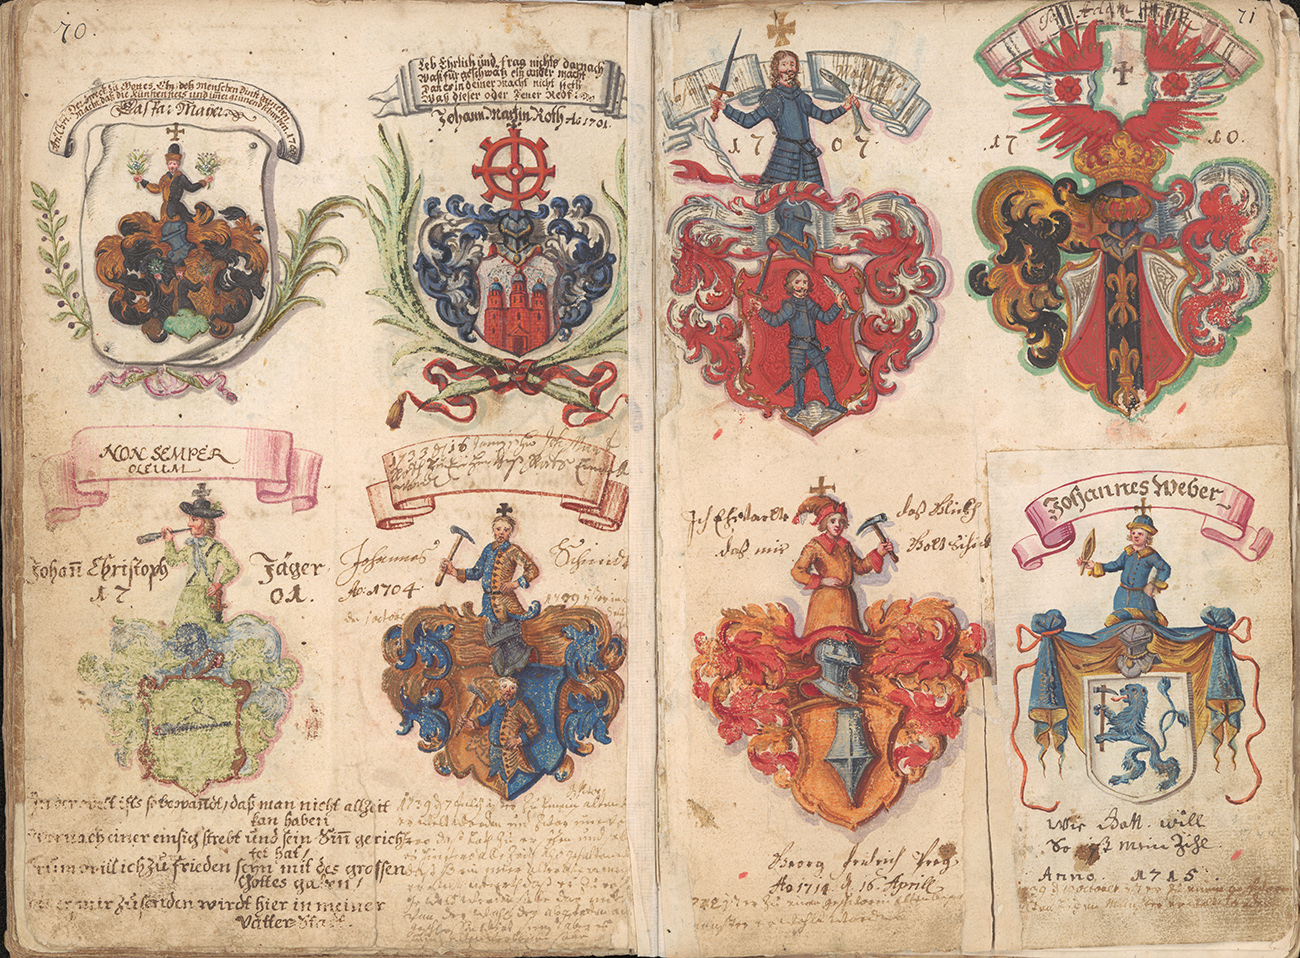  Wappenbuch der Goldschmiedemeister in Ulm